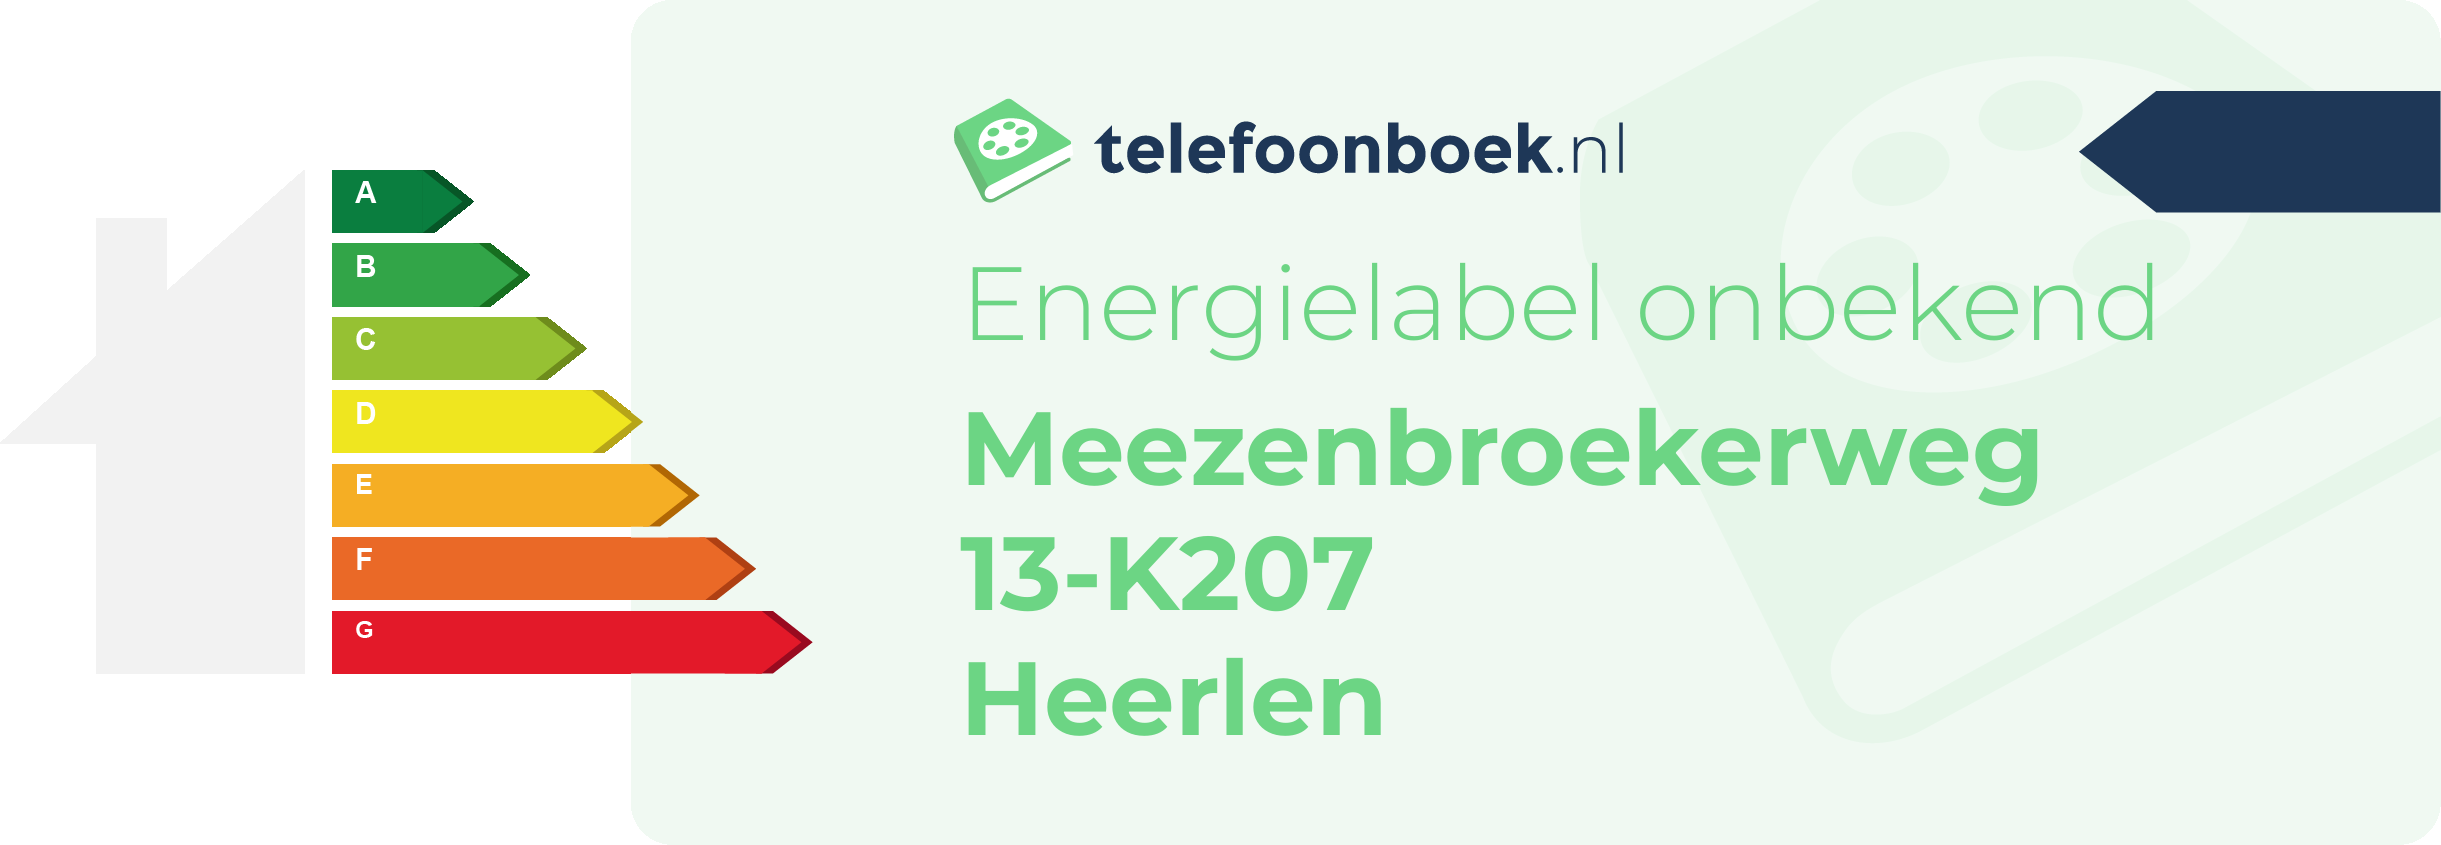 Energielabel Meezenbroekerweg 13-K207 Heerlen